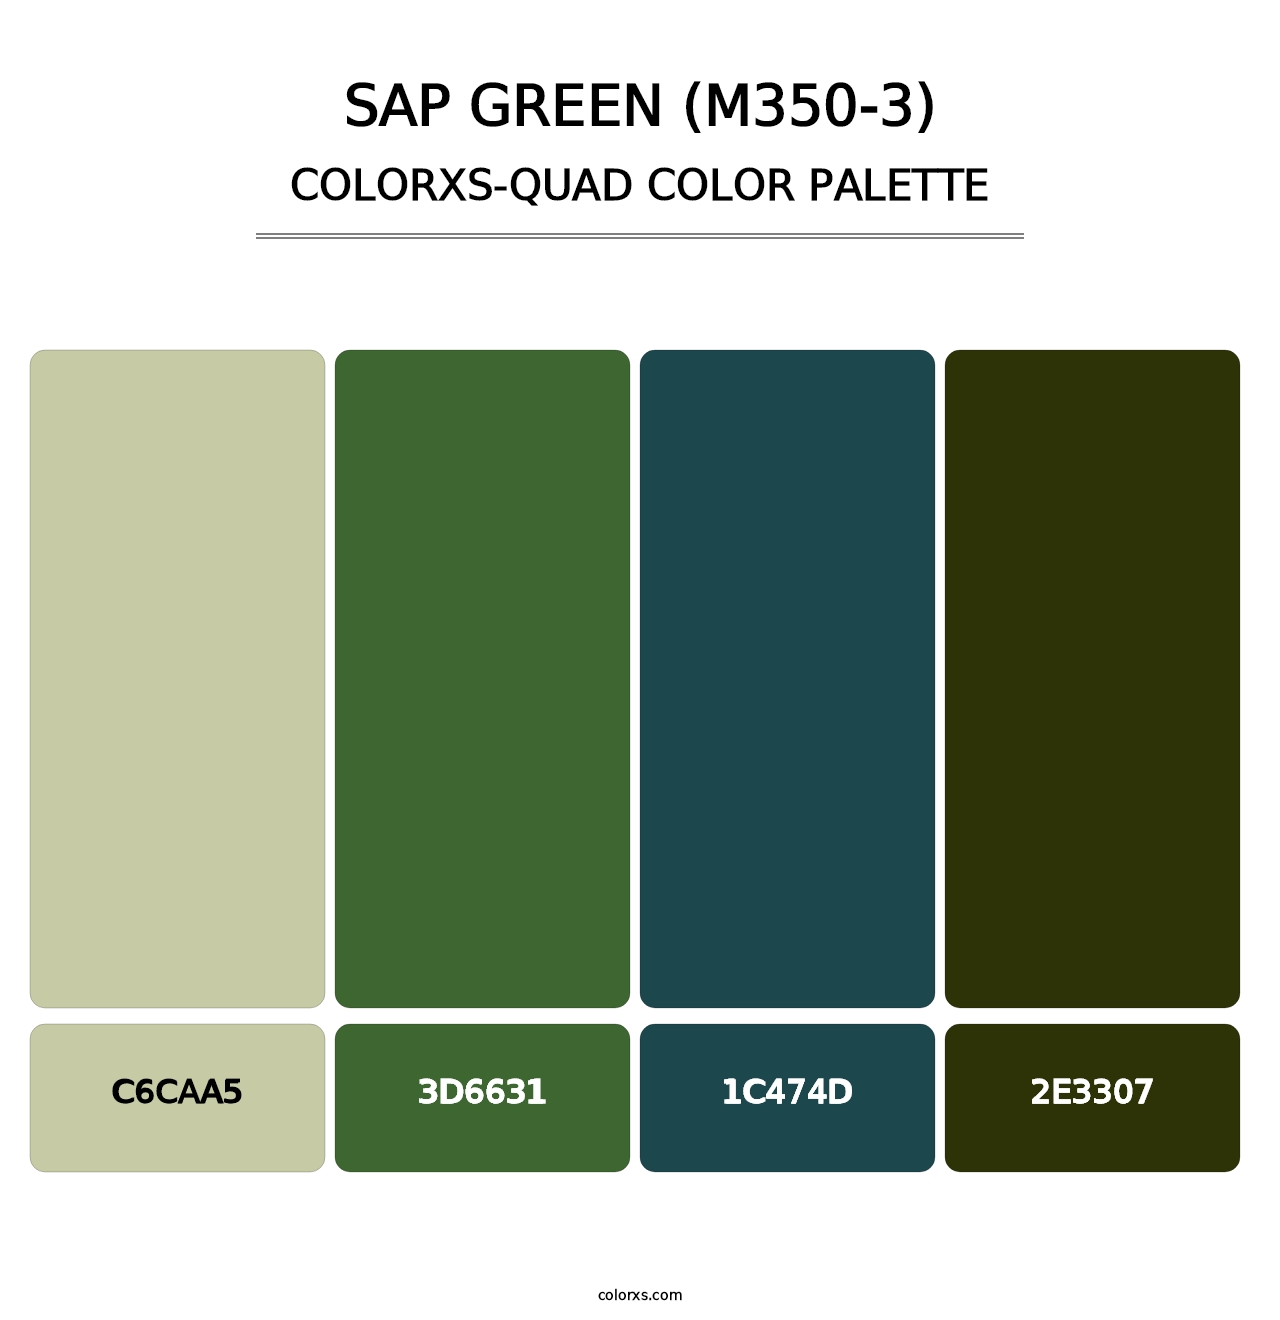 Sap Green (M350-3) - Colorxs Quad Palette